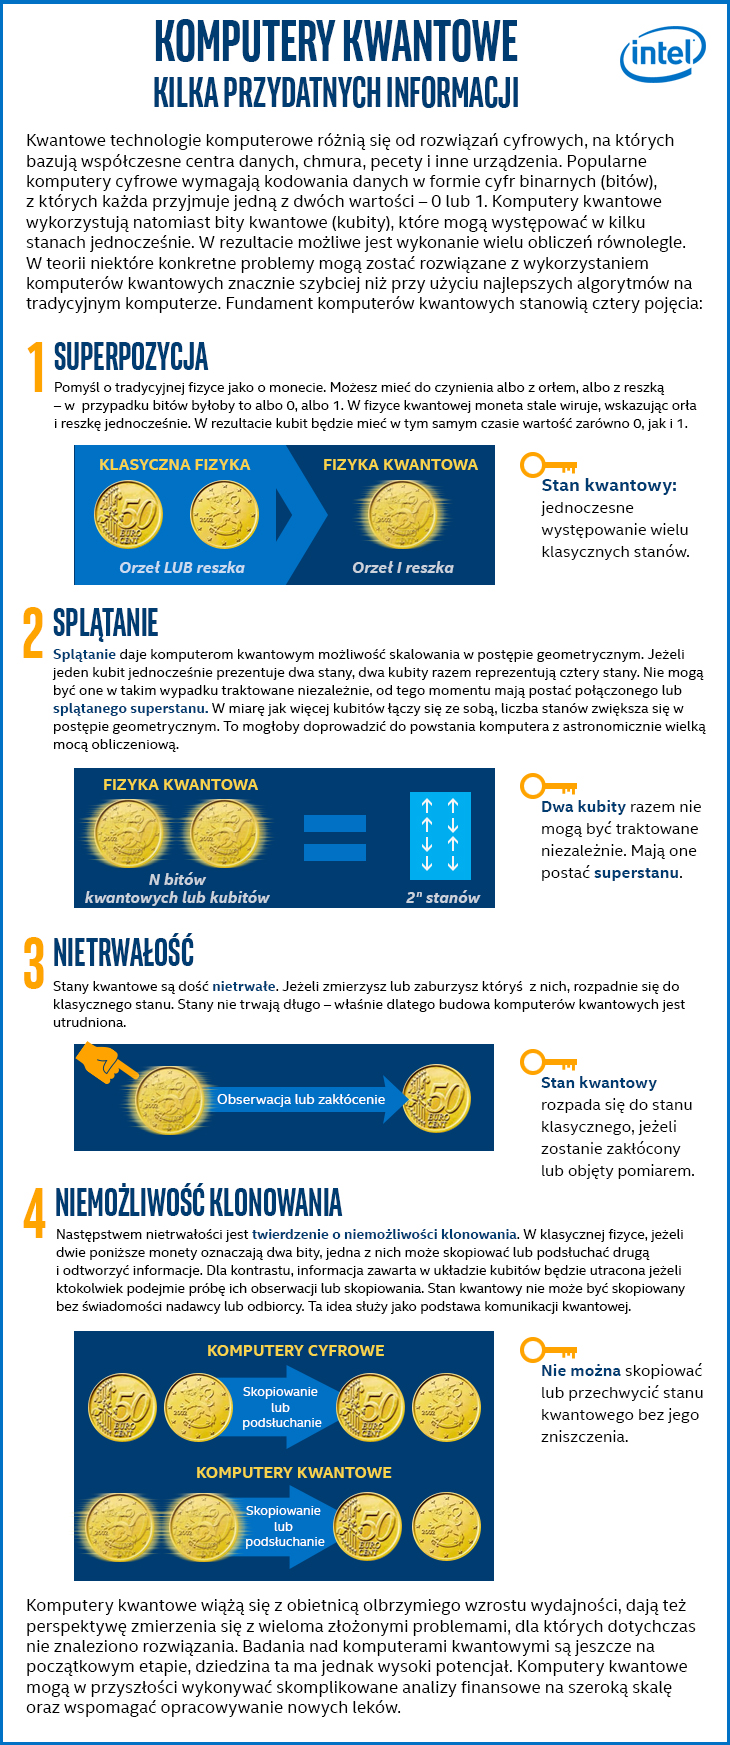 Intel inwestycja w komputery kwantowe - Infografika